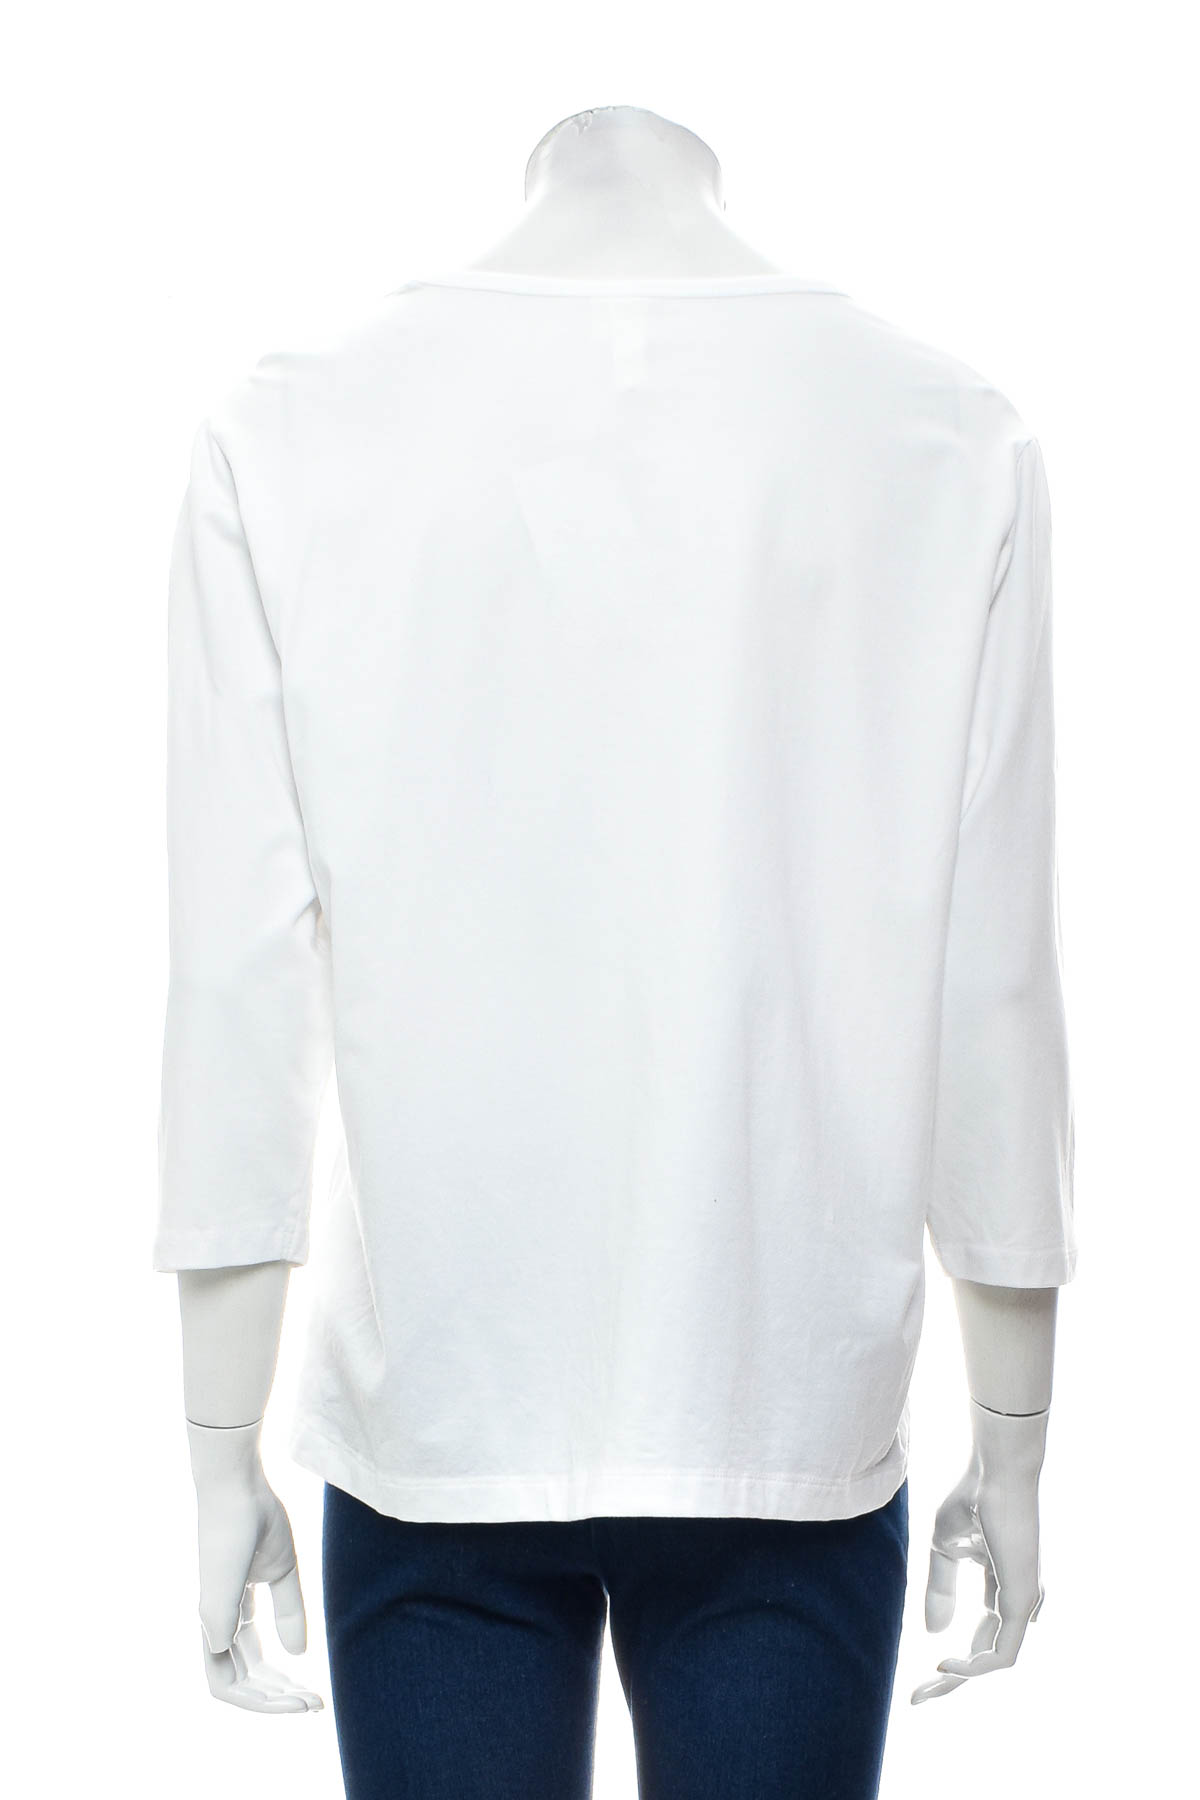 Women's blouse - H&M Basic - 1